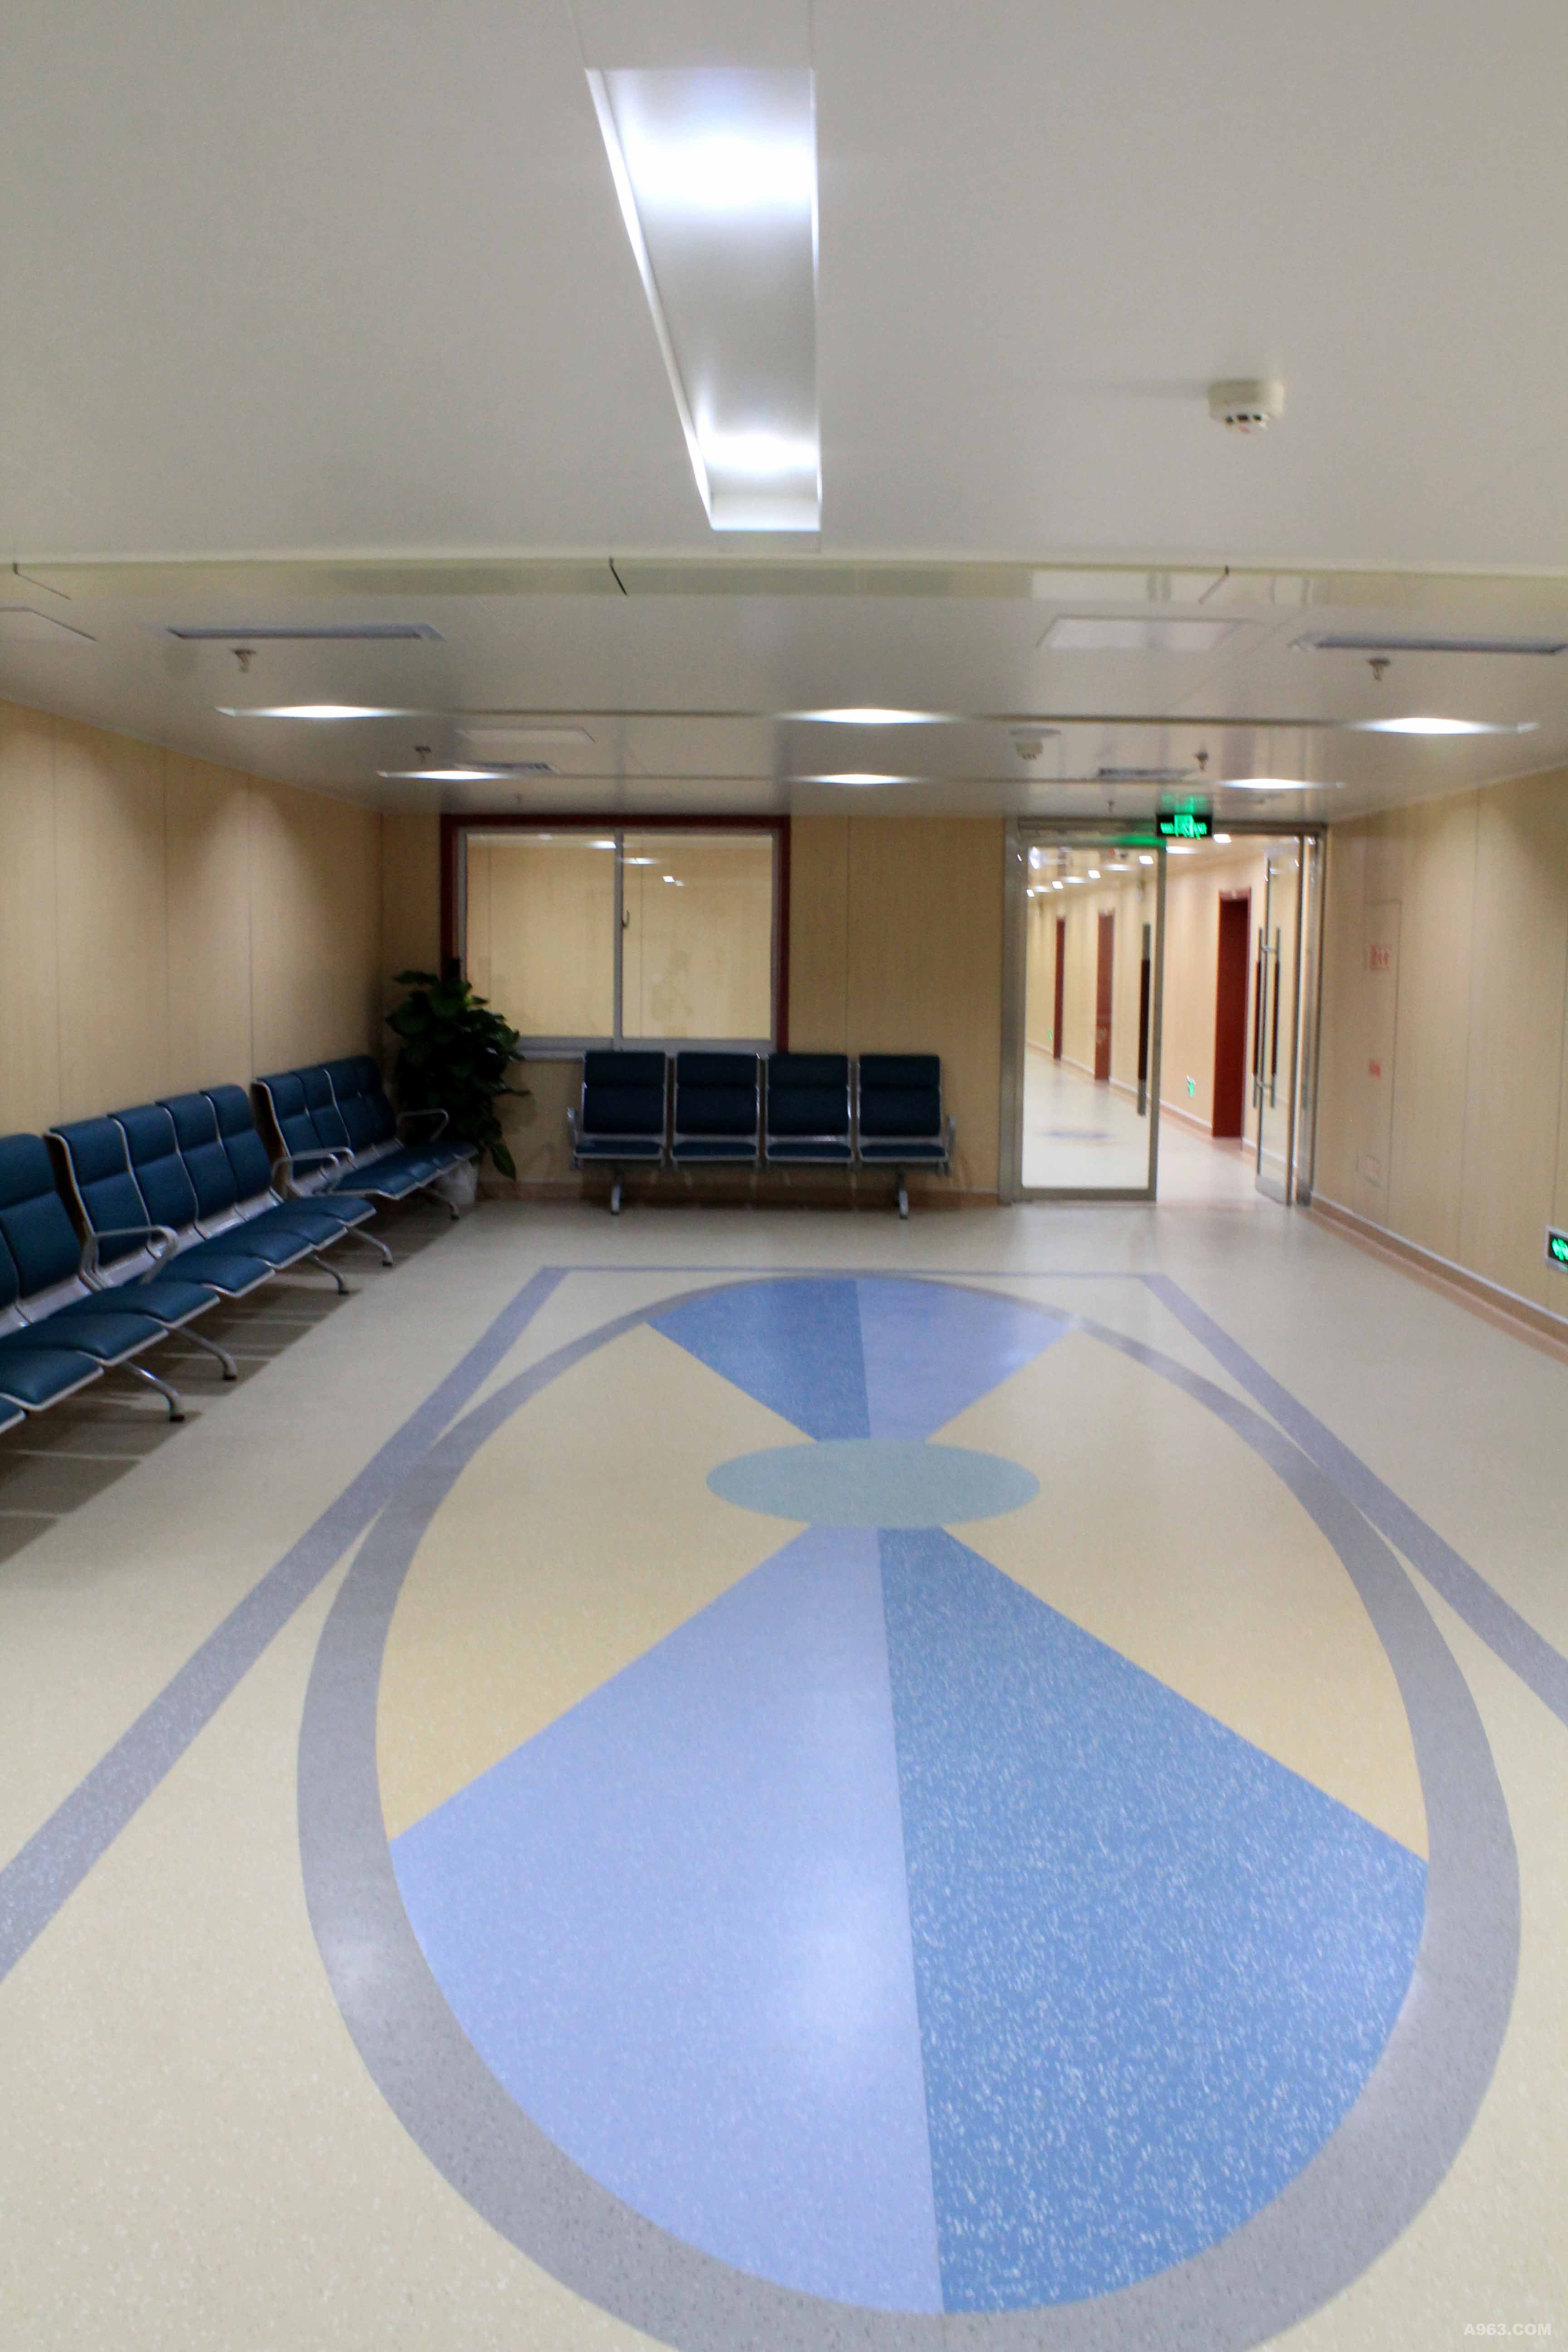 枣庄市立医院西院区整体装饰设计方案说明